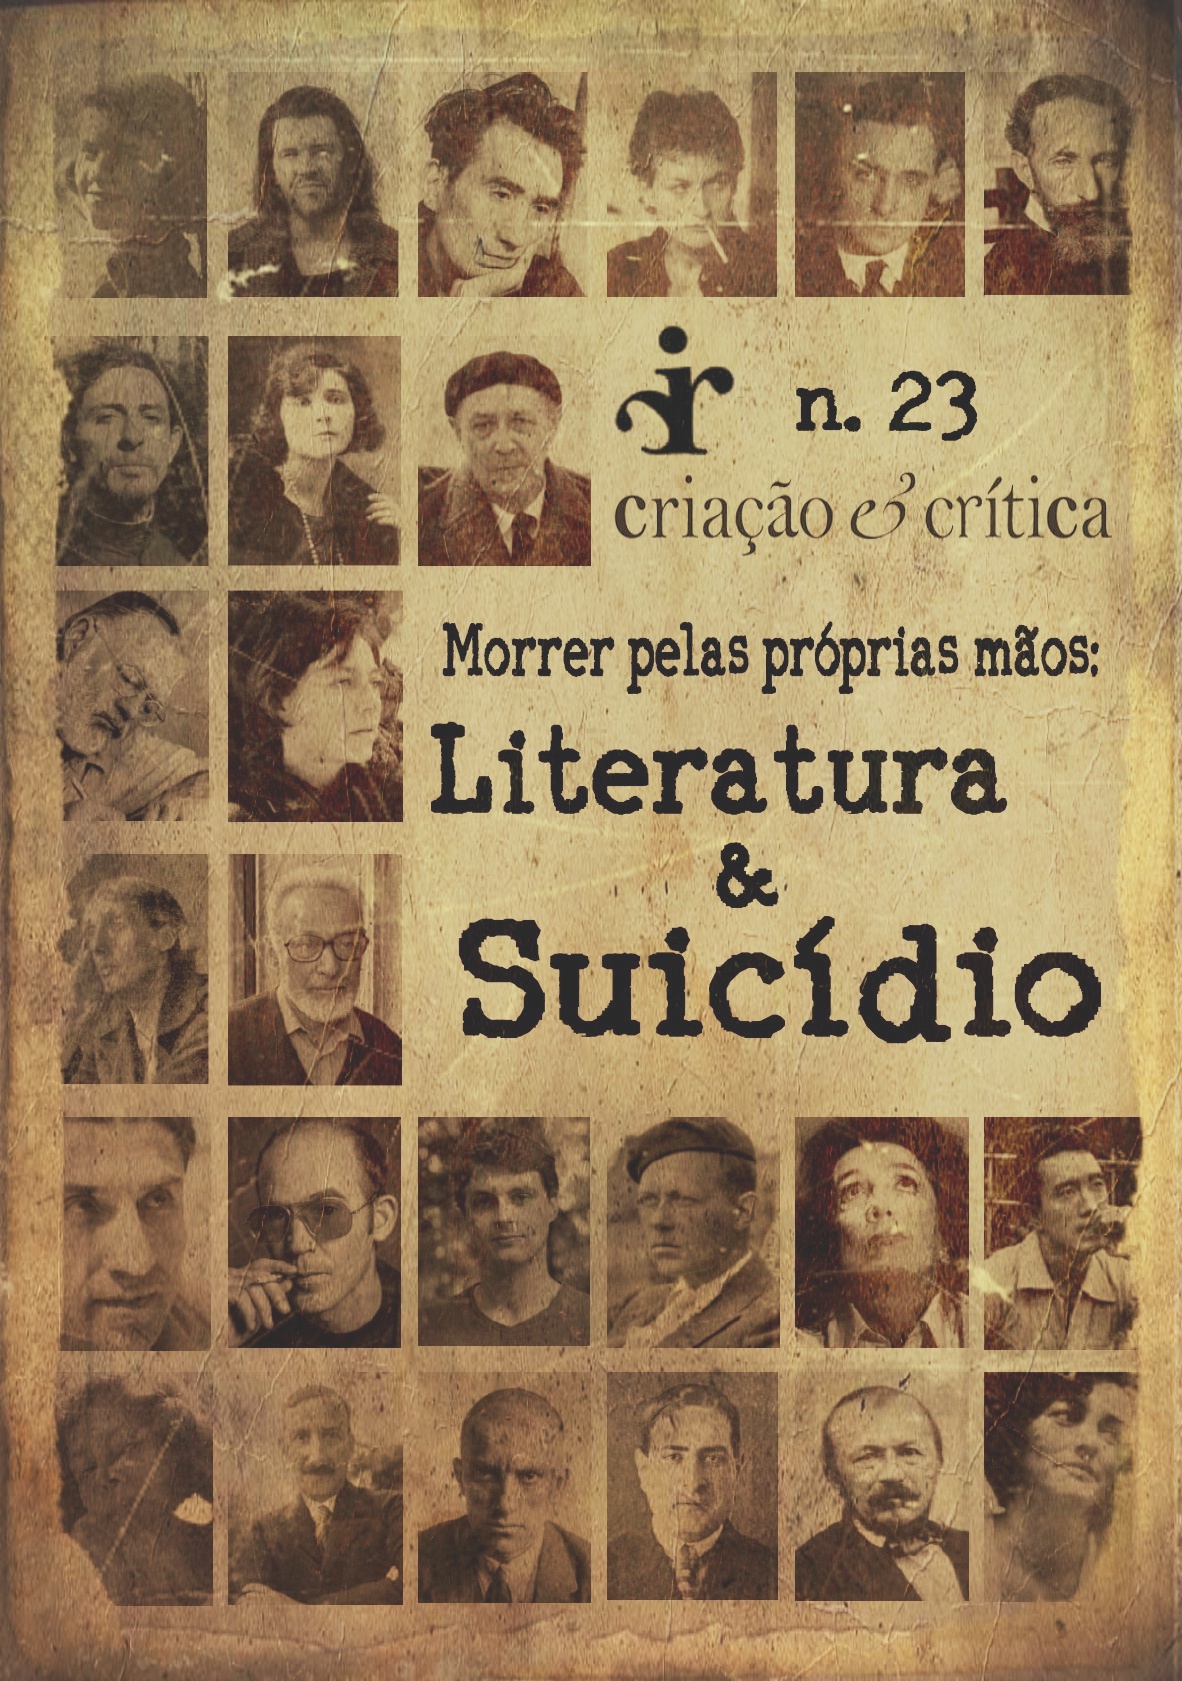 					View No. 23 (2019): Morrer pelas próprias mãos: literatura e suicídio
				